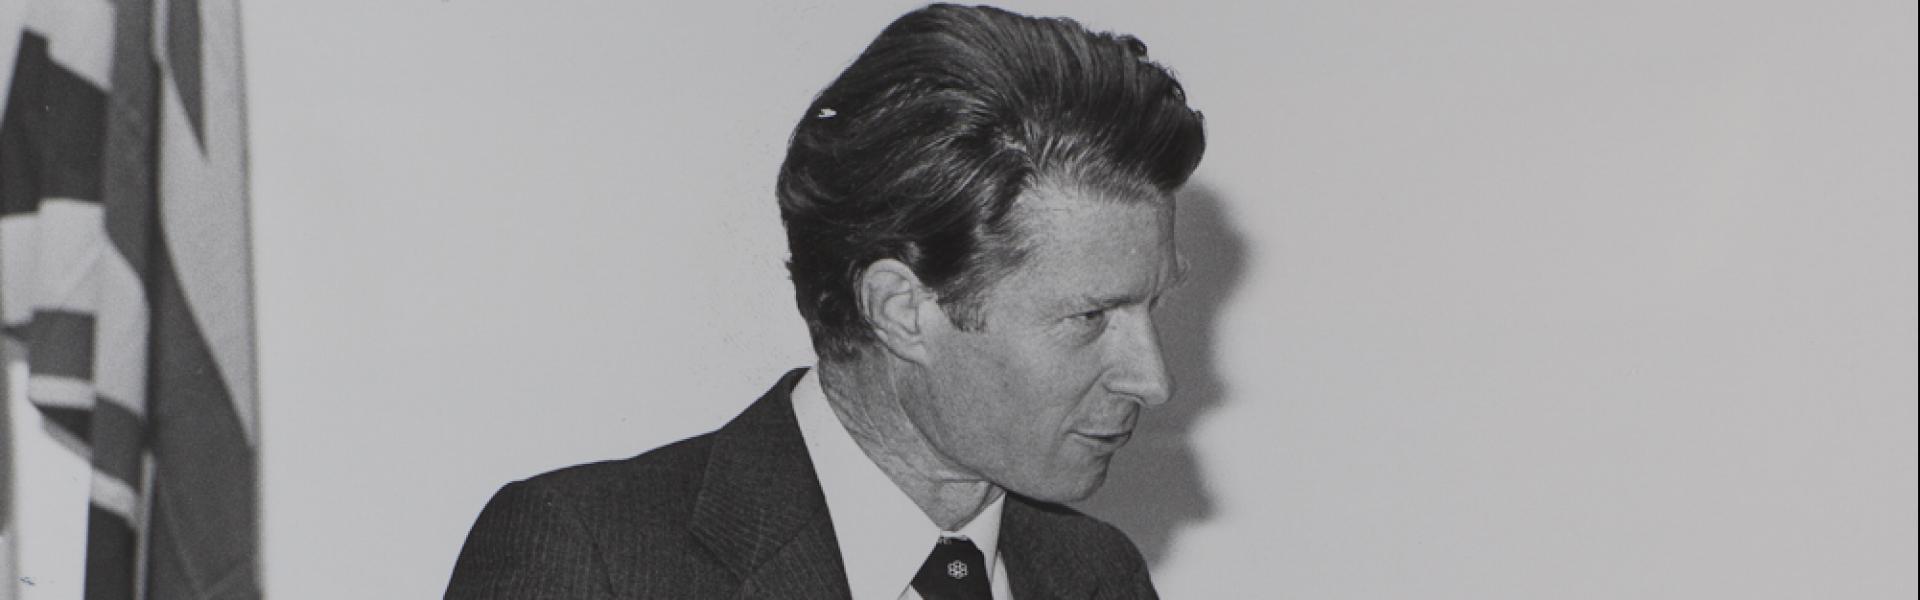 Ensimmäinen Yrjö Reenpää -luennoitsija, professori John B. Gurdon vuonna 1979. Mainosvalokuvaamo Kai Nordberg Ky 